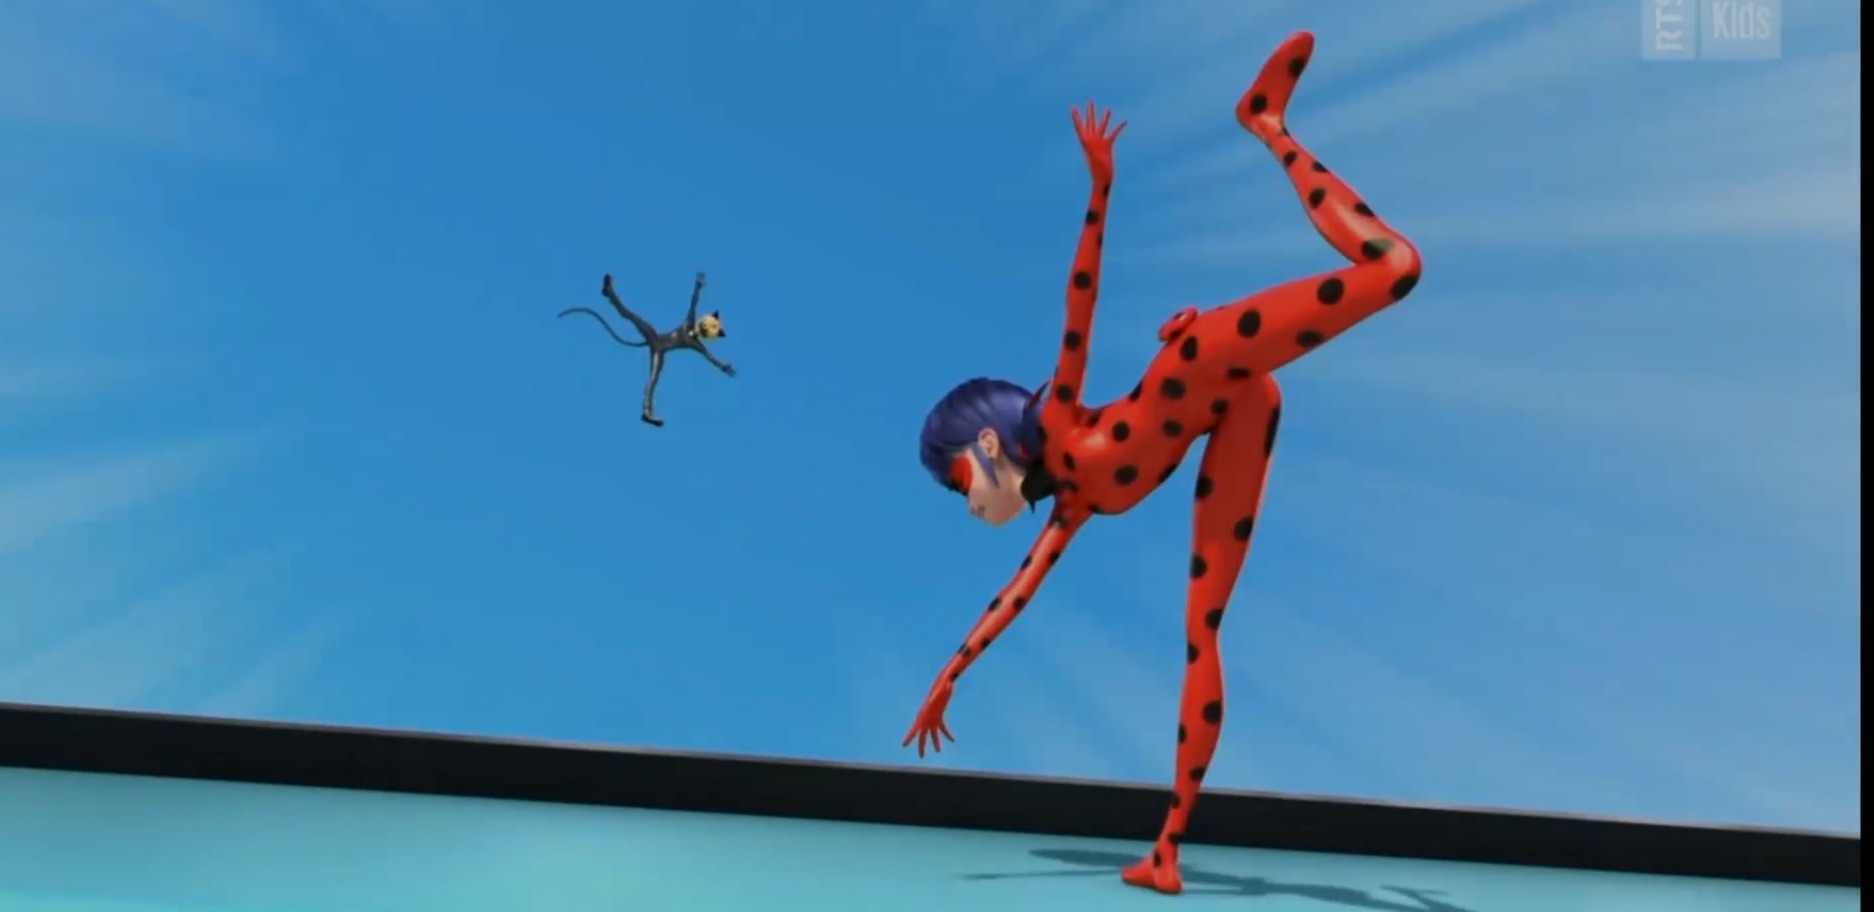 Miraculous season 4  Miraculous ladybug anime, Miraculous ladybug movie,  Miraculous ladybug memes